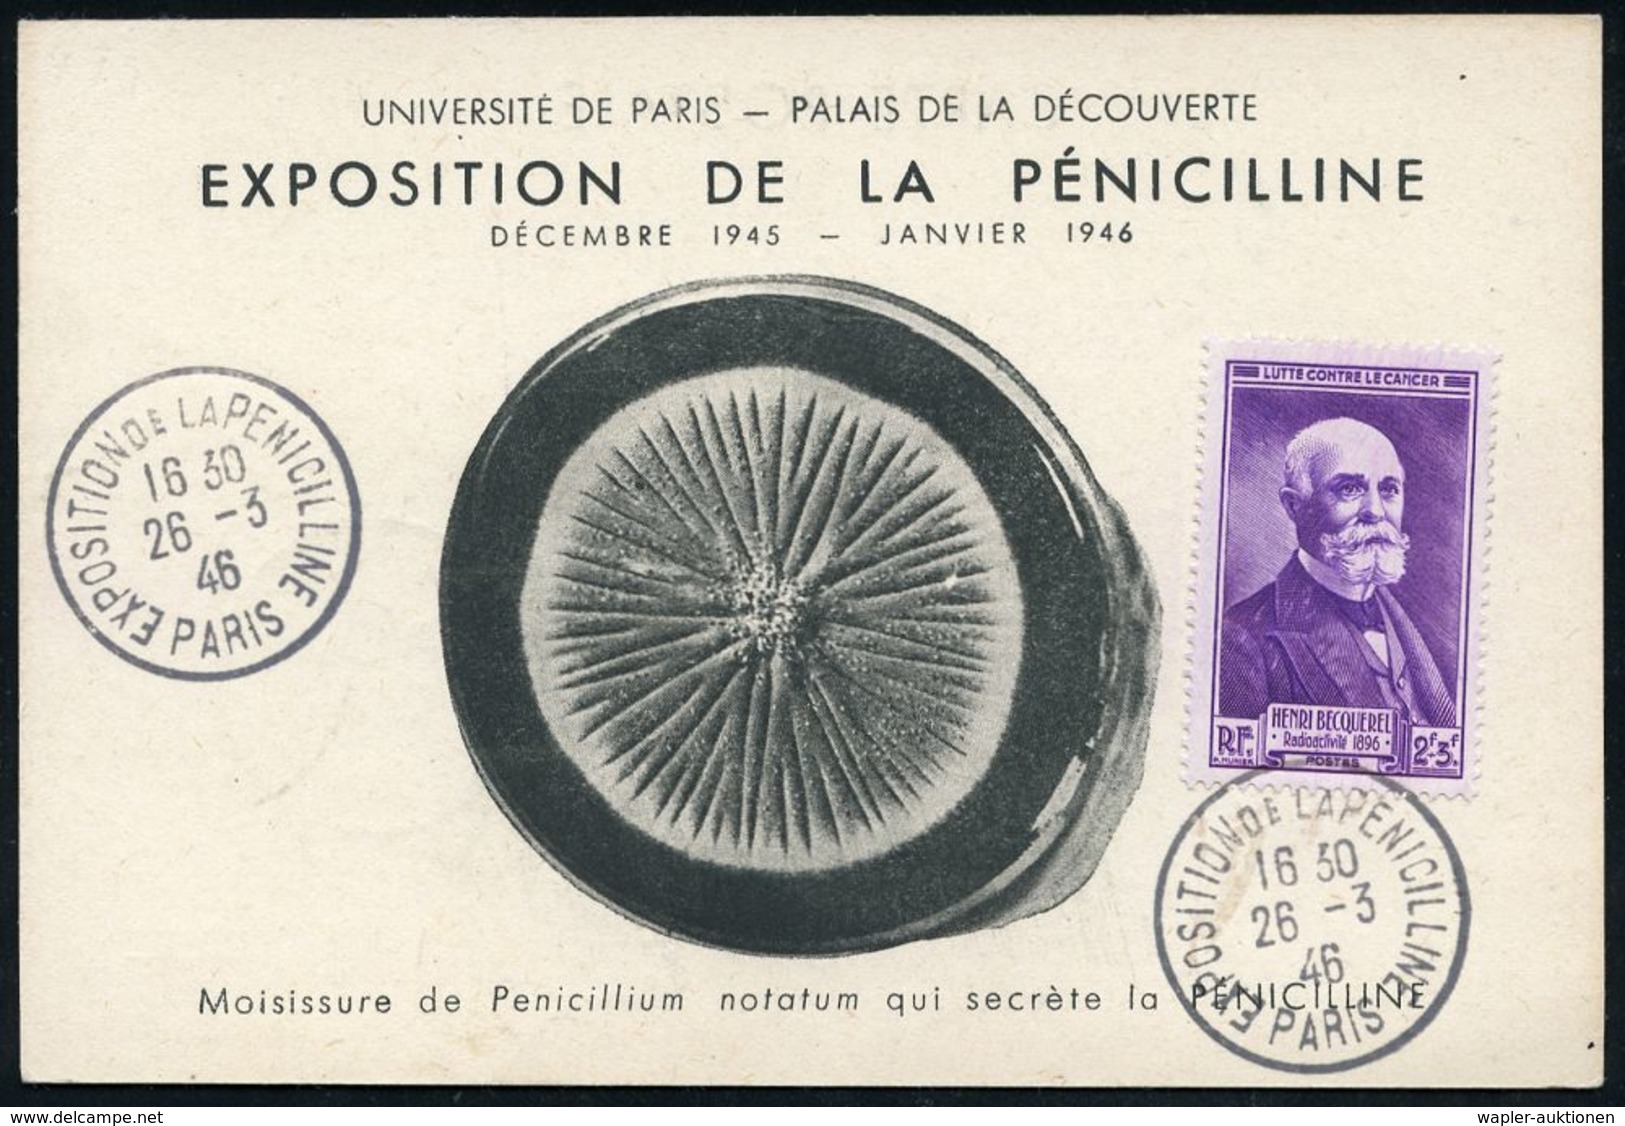 MEDIZINISCHE AUSSTELLUNGEN & KONGRESSE : FRANKREICH 1946 (26.3.) SSt.: PARIS/EXPOSITION DE LA PENICILINE (Penizilin-Auss - Médecine